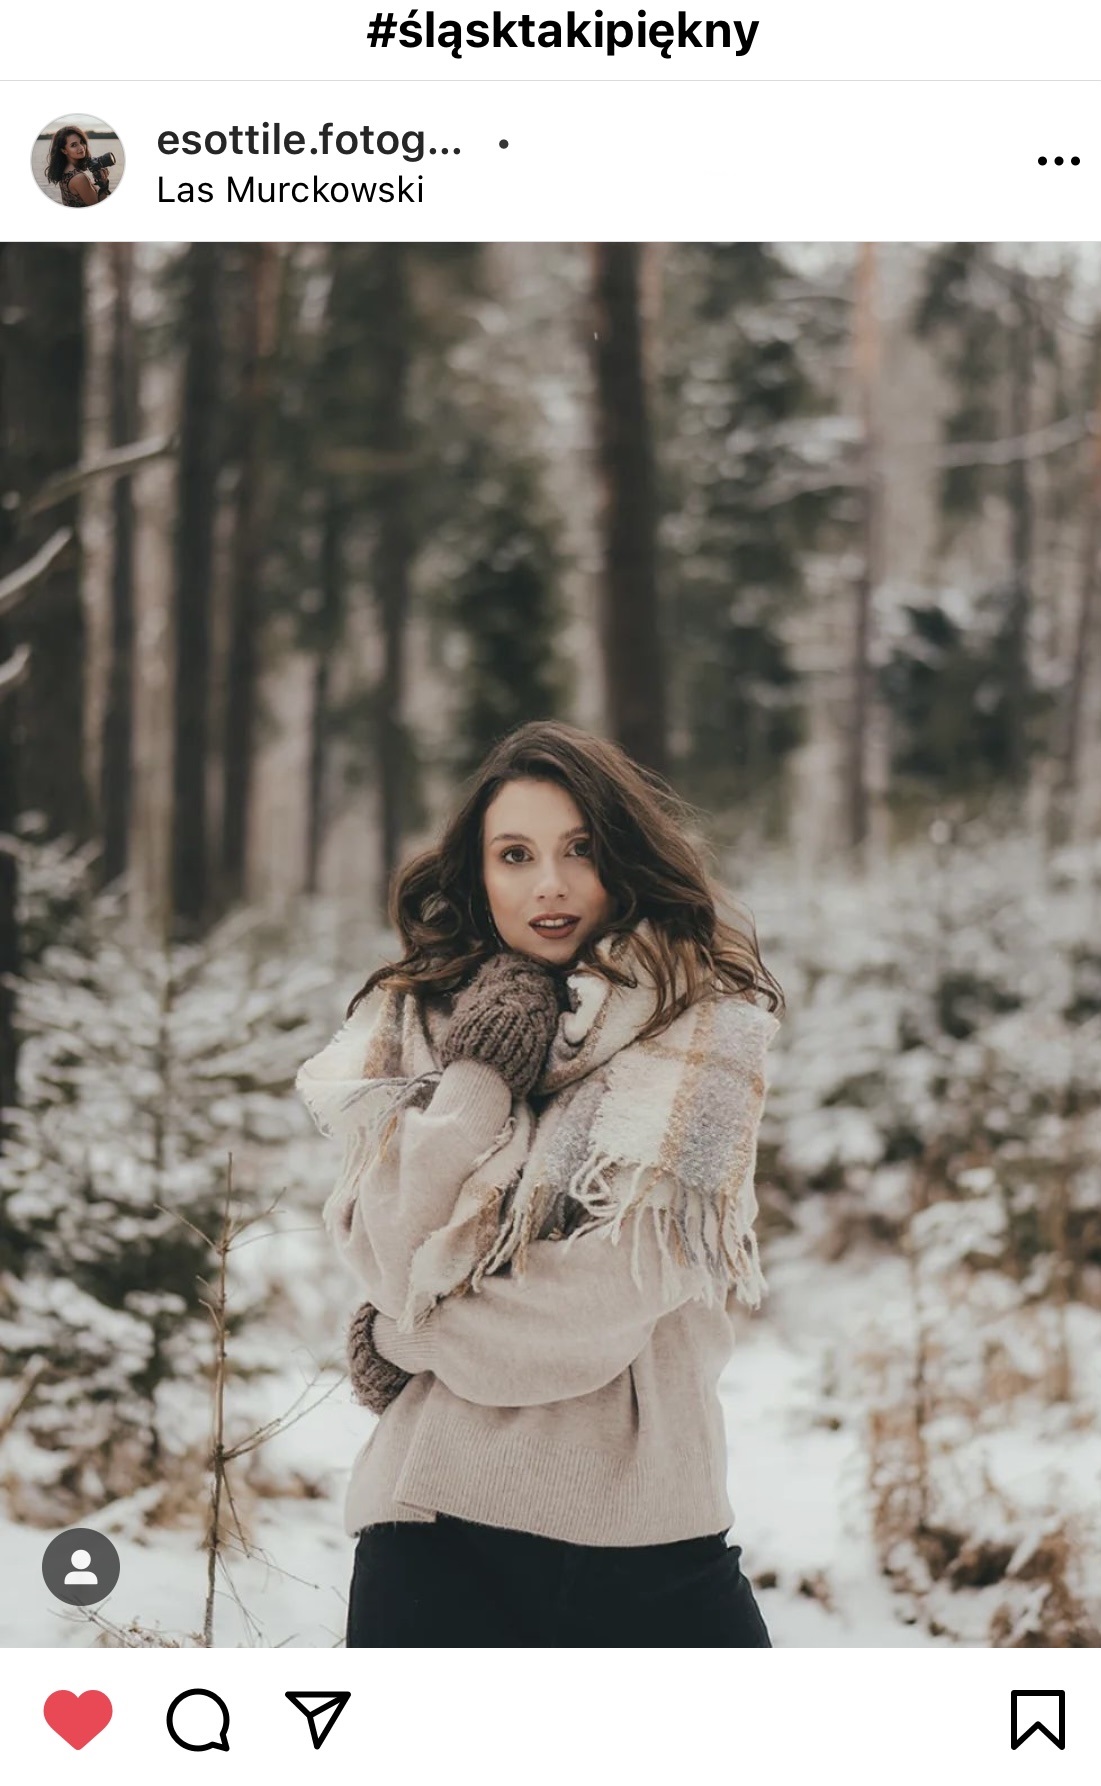 Opatulona dziewczyna w szalu stoi w lesie. #śląsktakipiękny